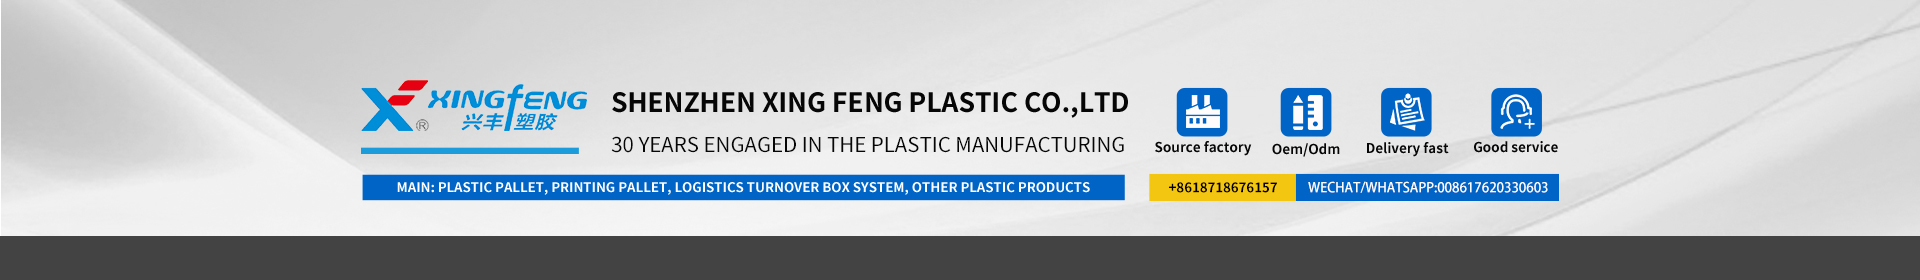 Xingfengプラスチック会社は30年のプラスチック製品の専門家です